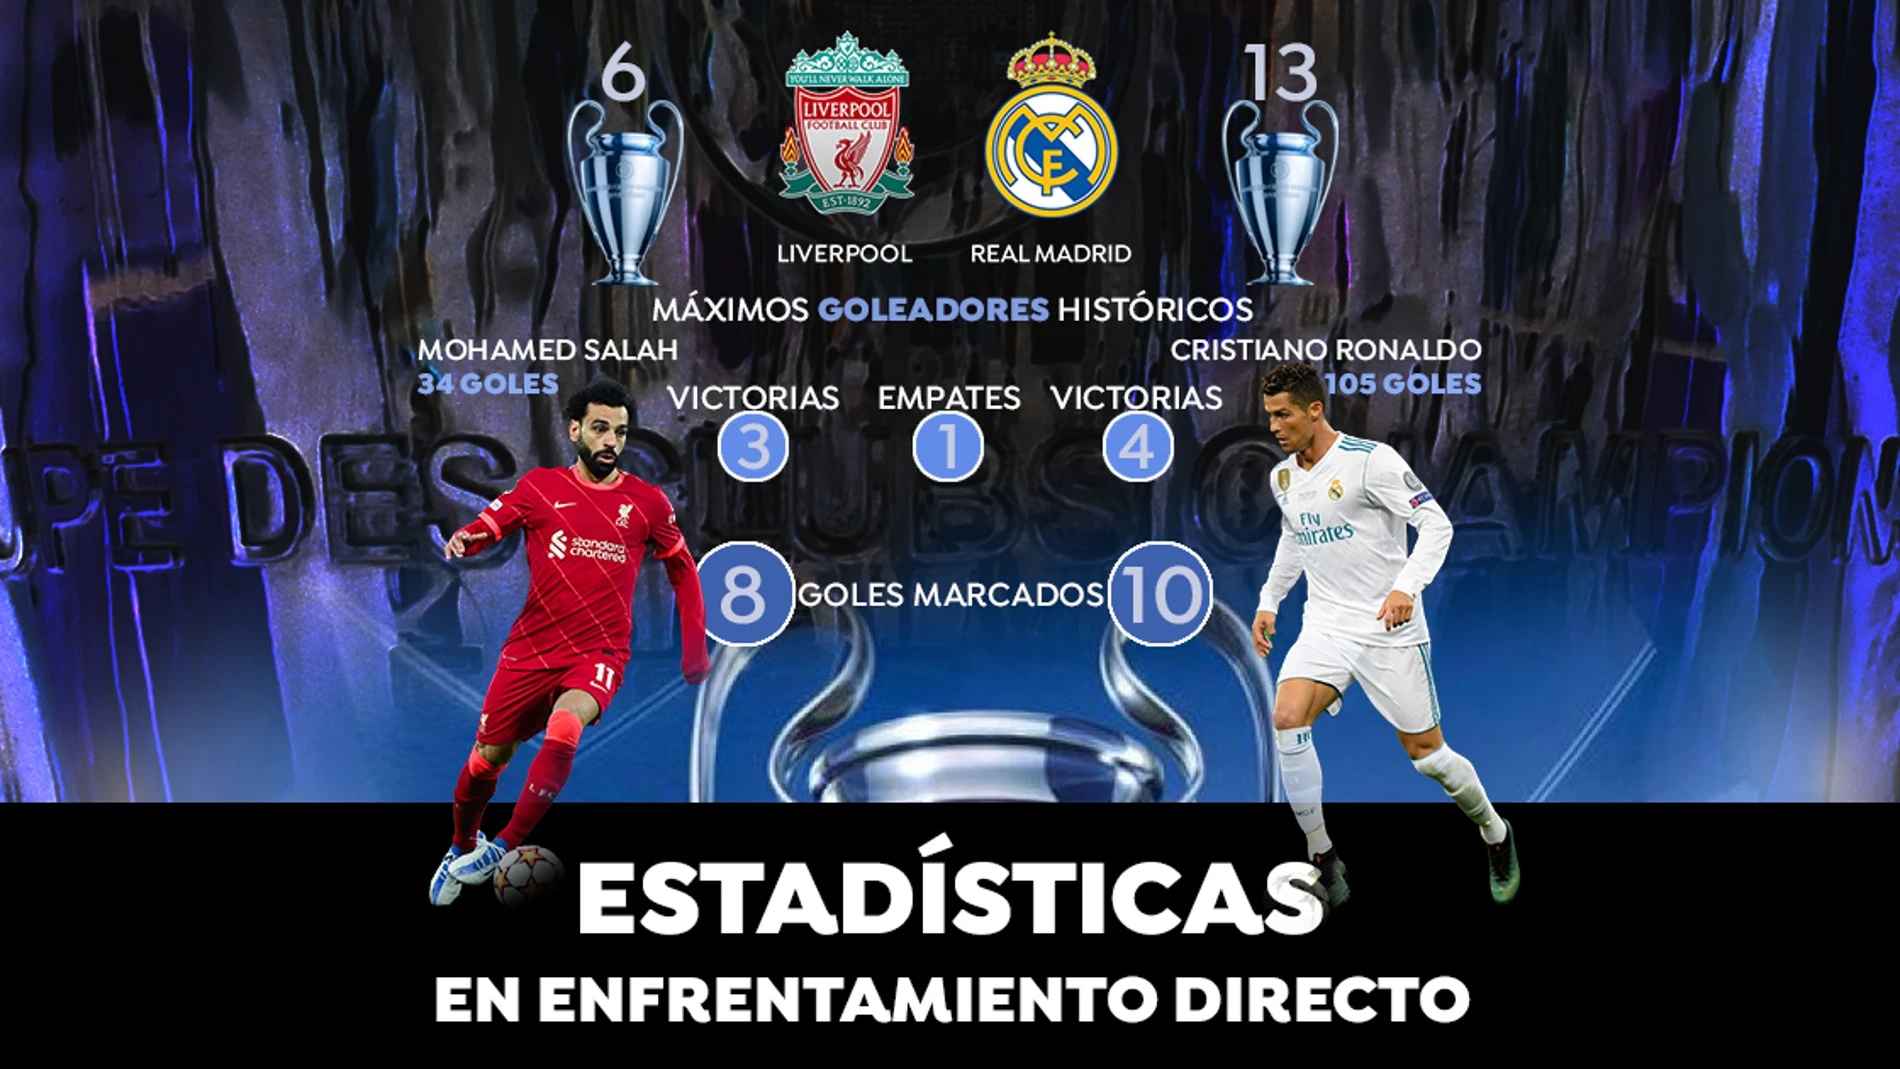 Liverpool - Real Madrid: Datos y estadísticas de la final